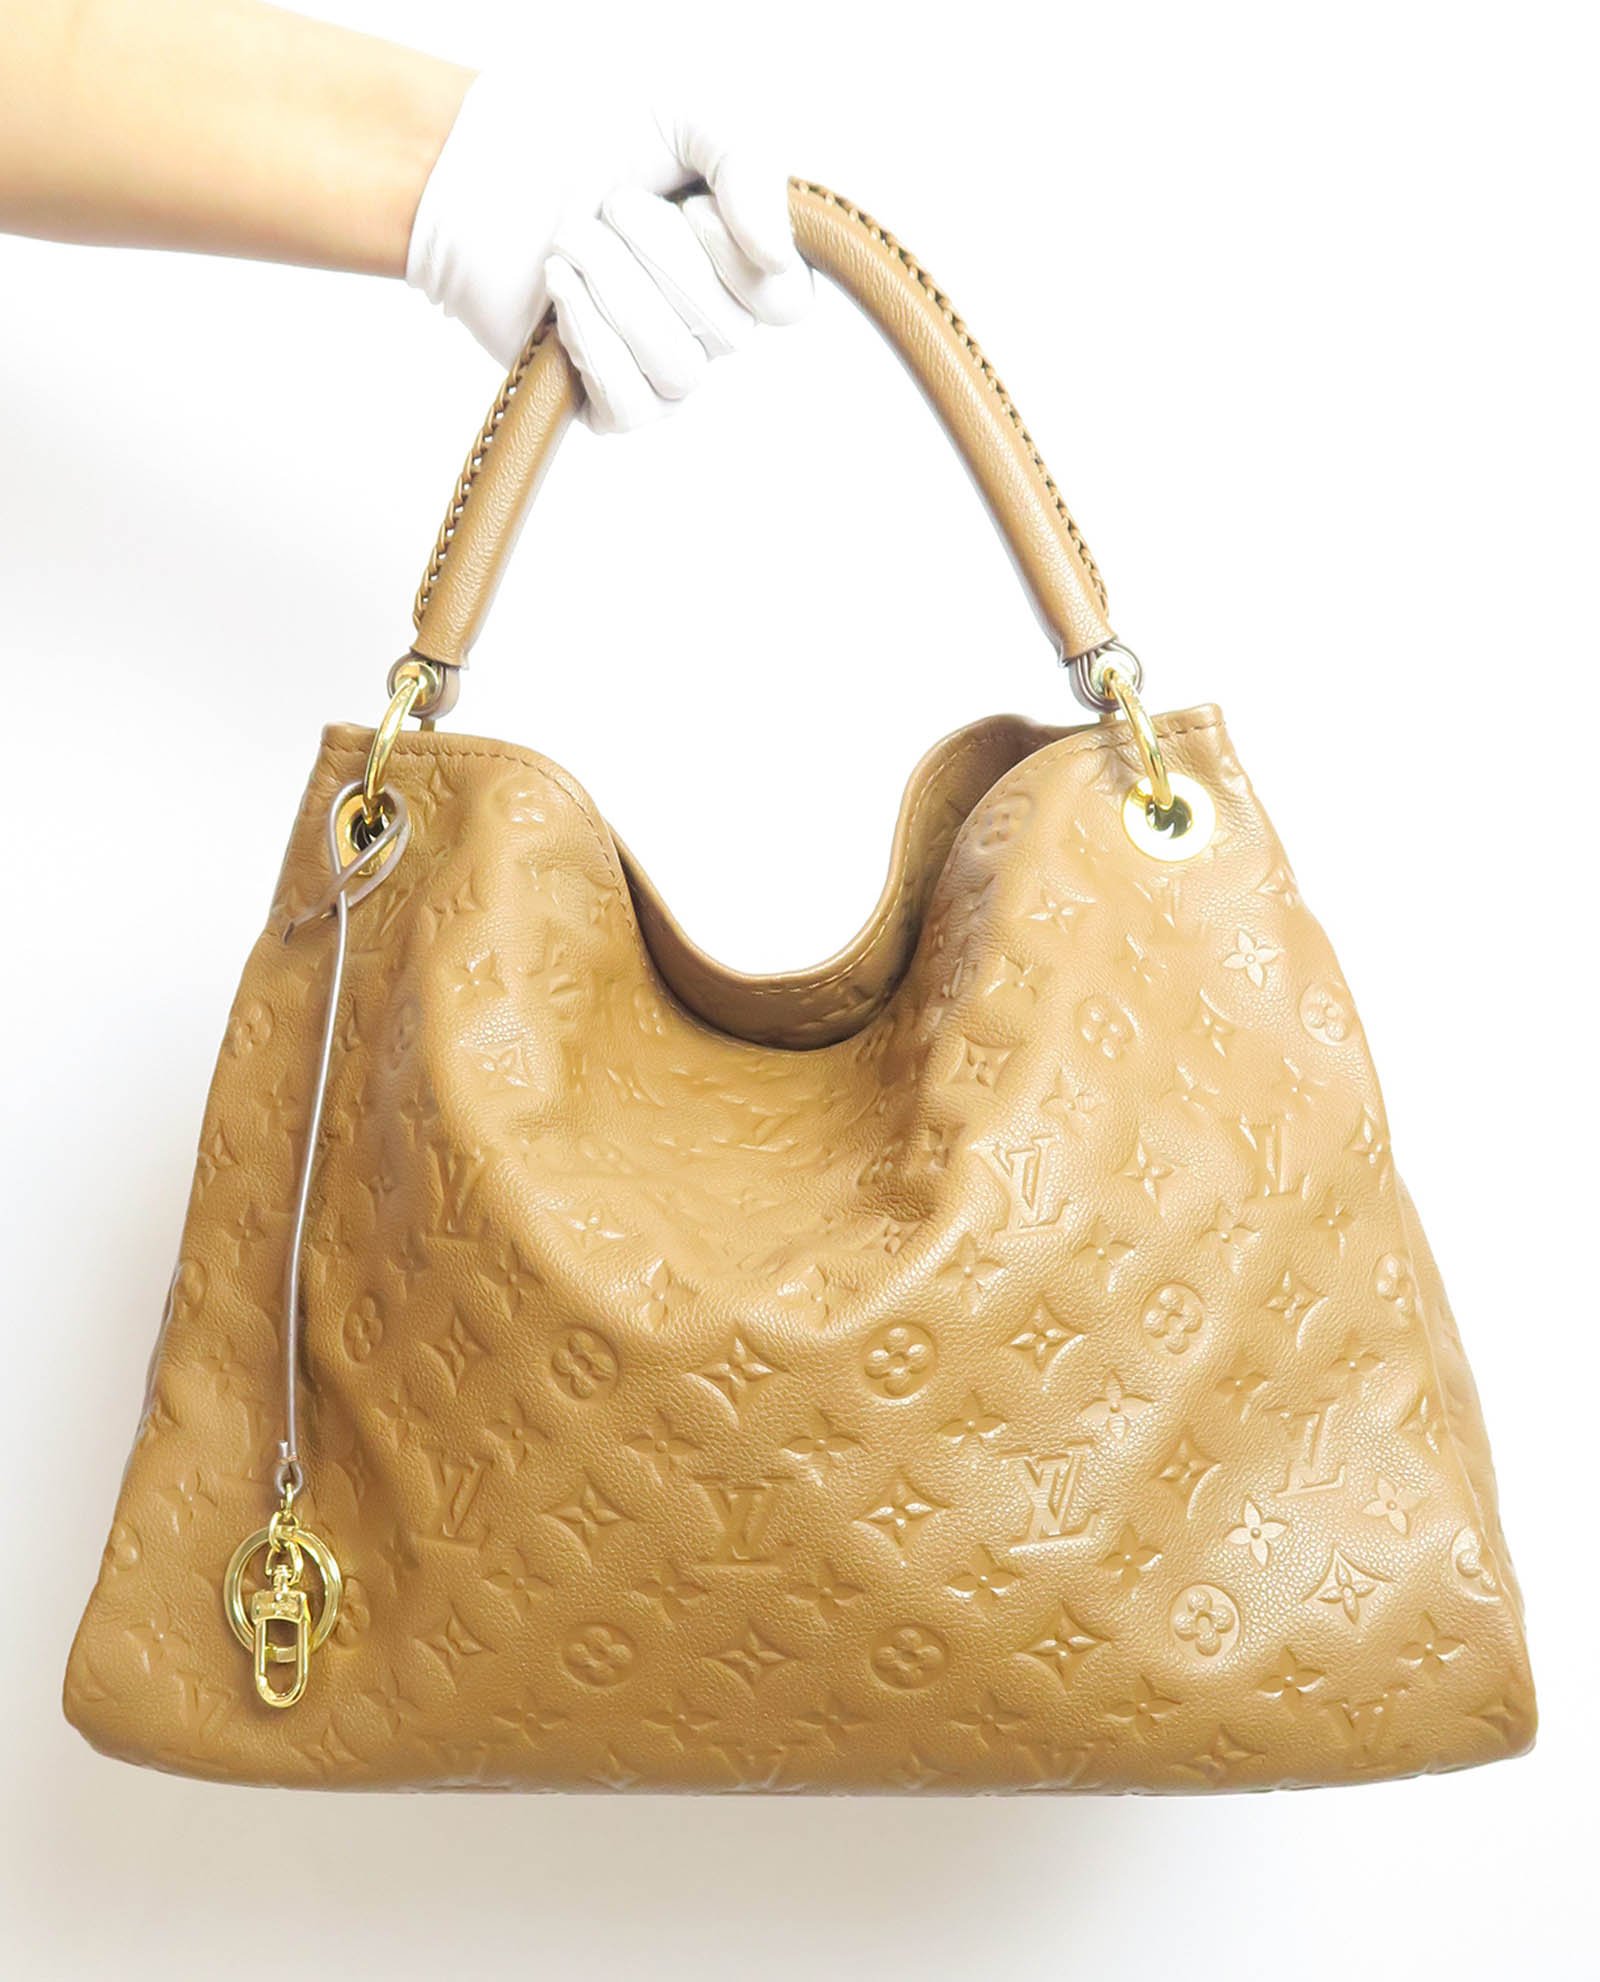 Louis Vuitton Artsy Handbag 399955